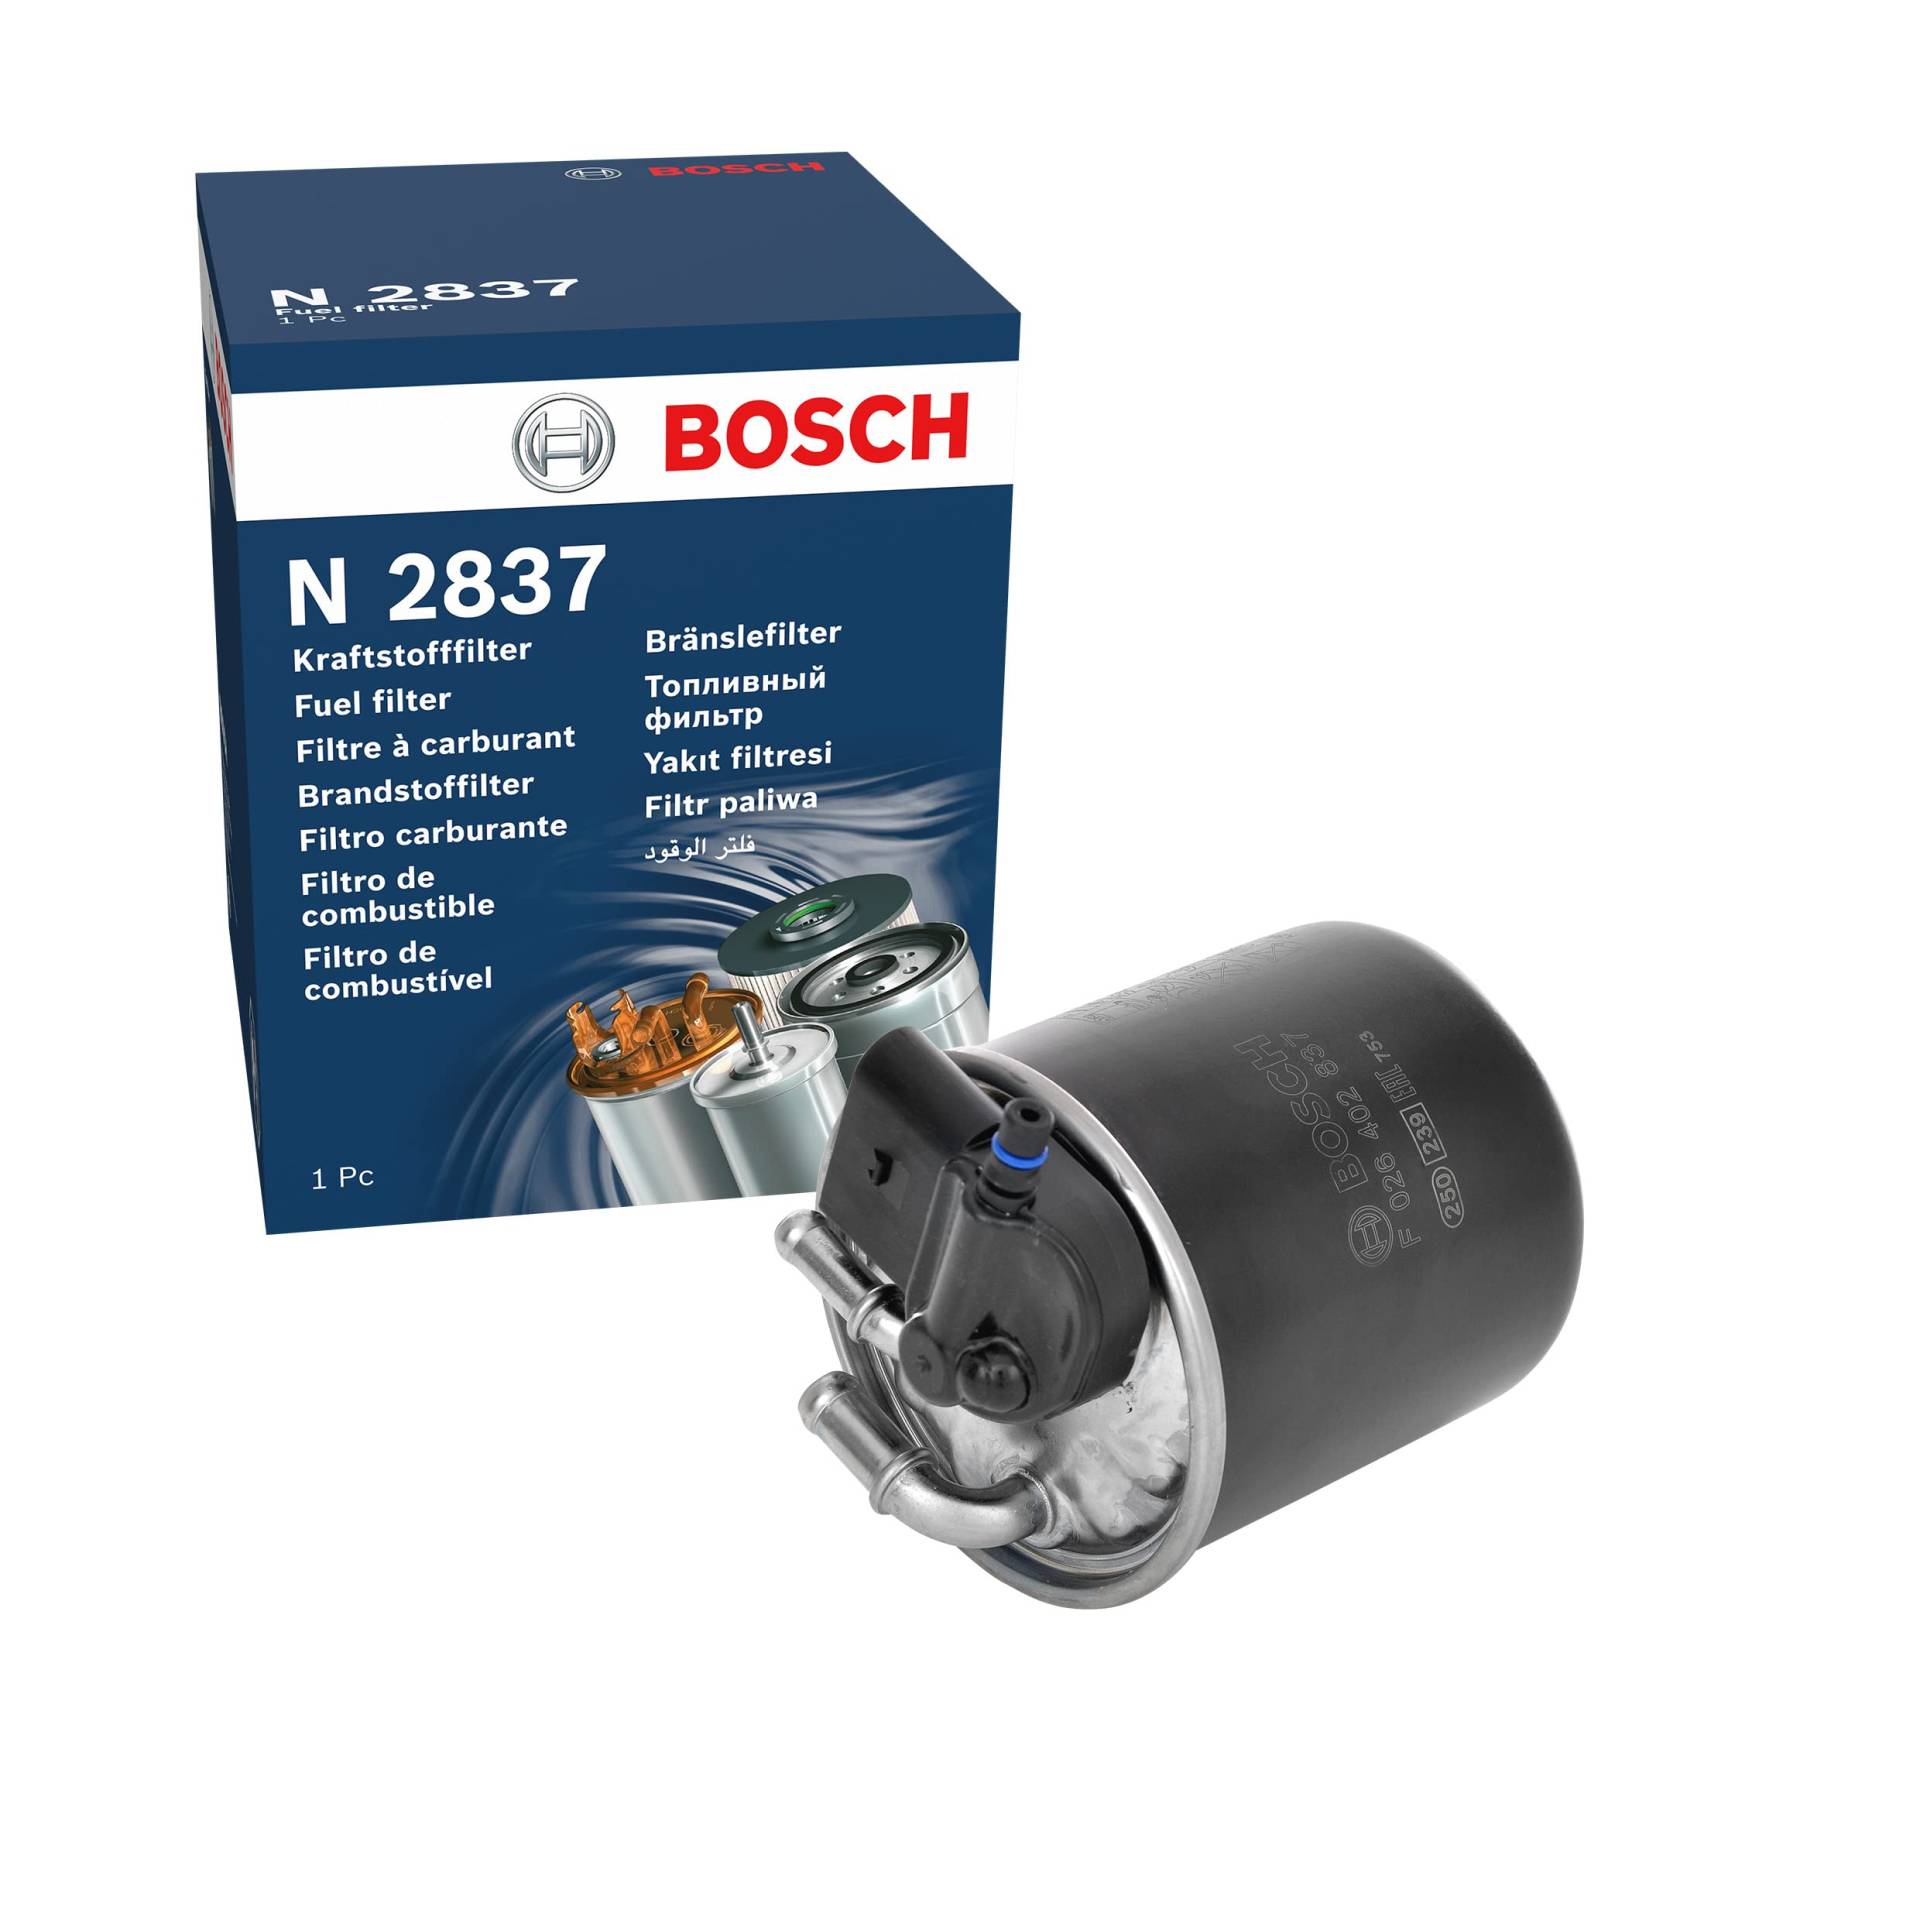 Bosch N2837 - Dieselfilter Auto von Bosch Automotive